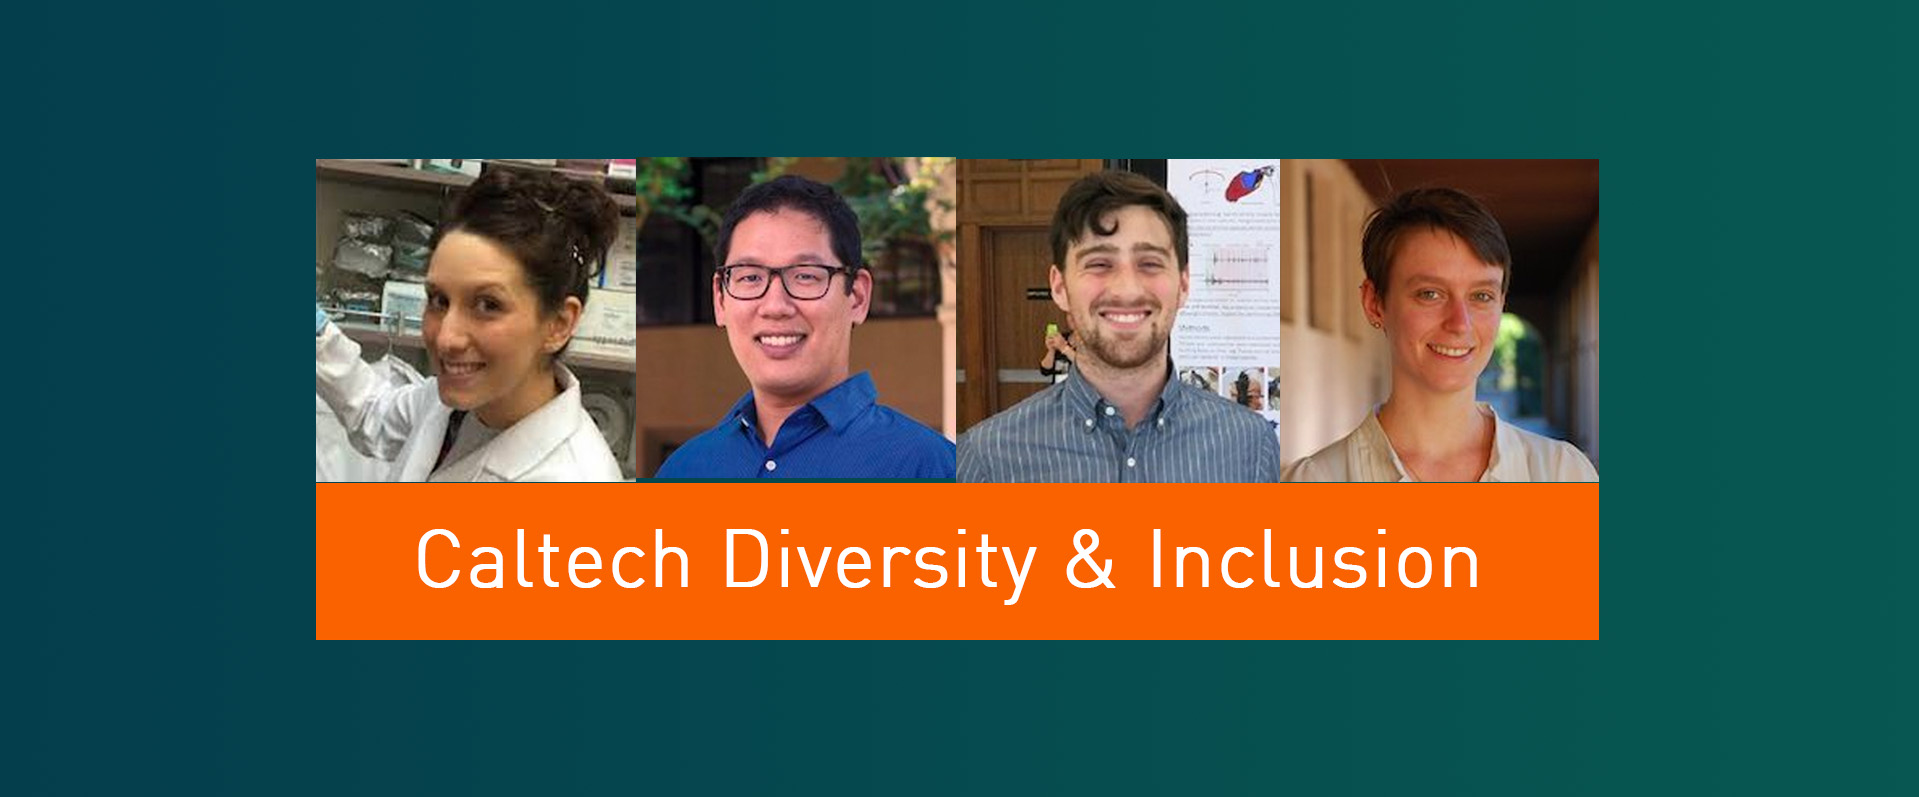 加州理工学院宣布多样性和包容奖得主